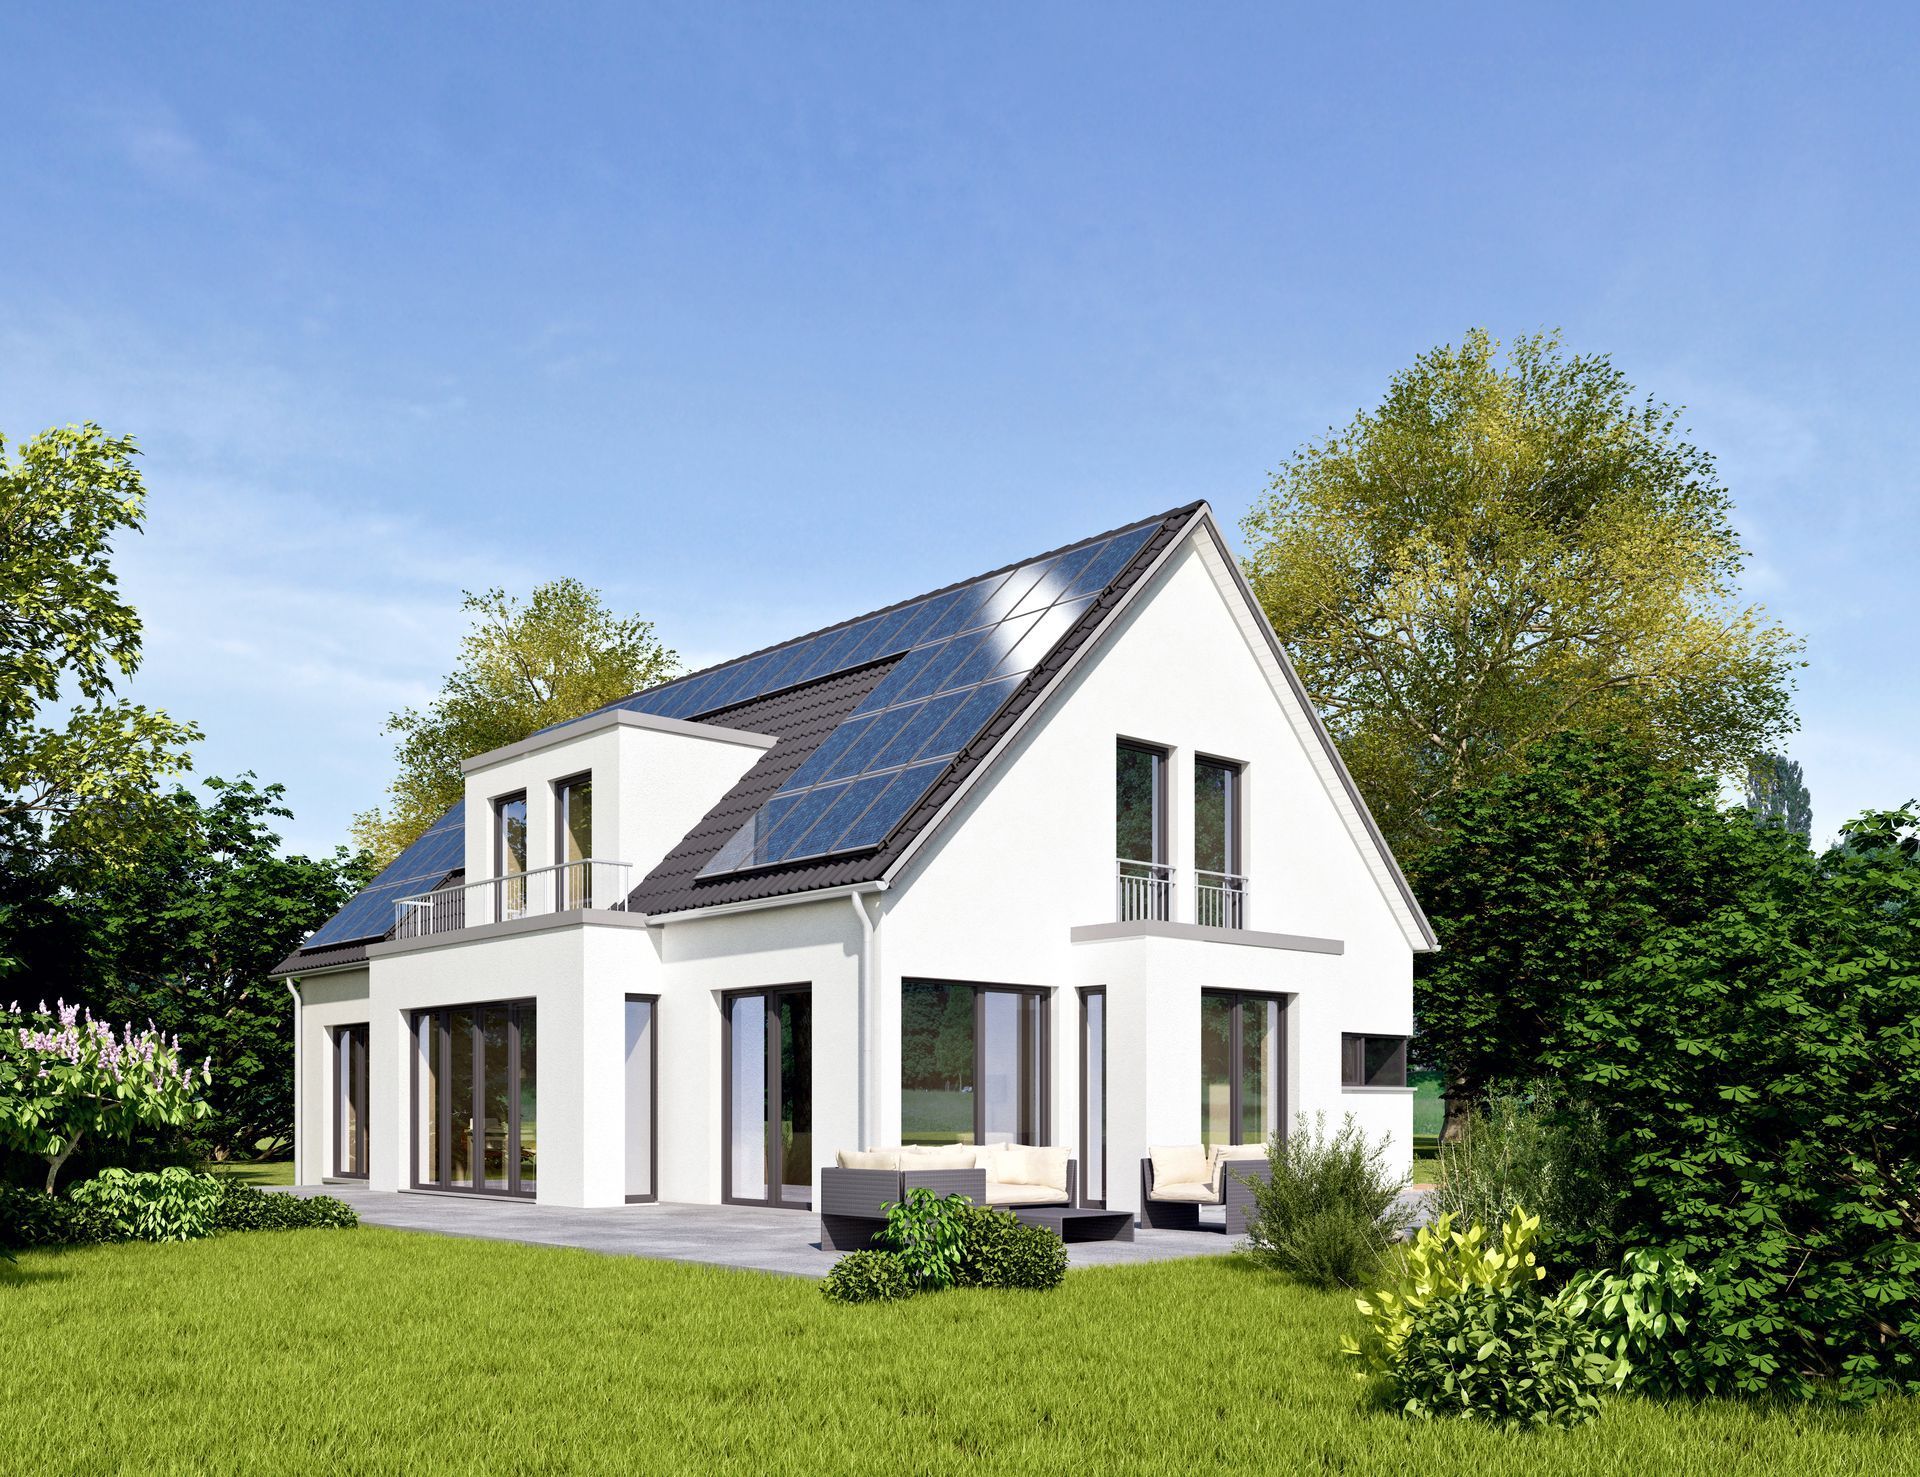 Ein weißes Haus mit Sonnenkollektoren auf dem Dach